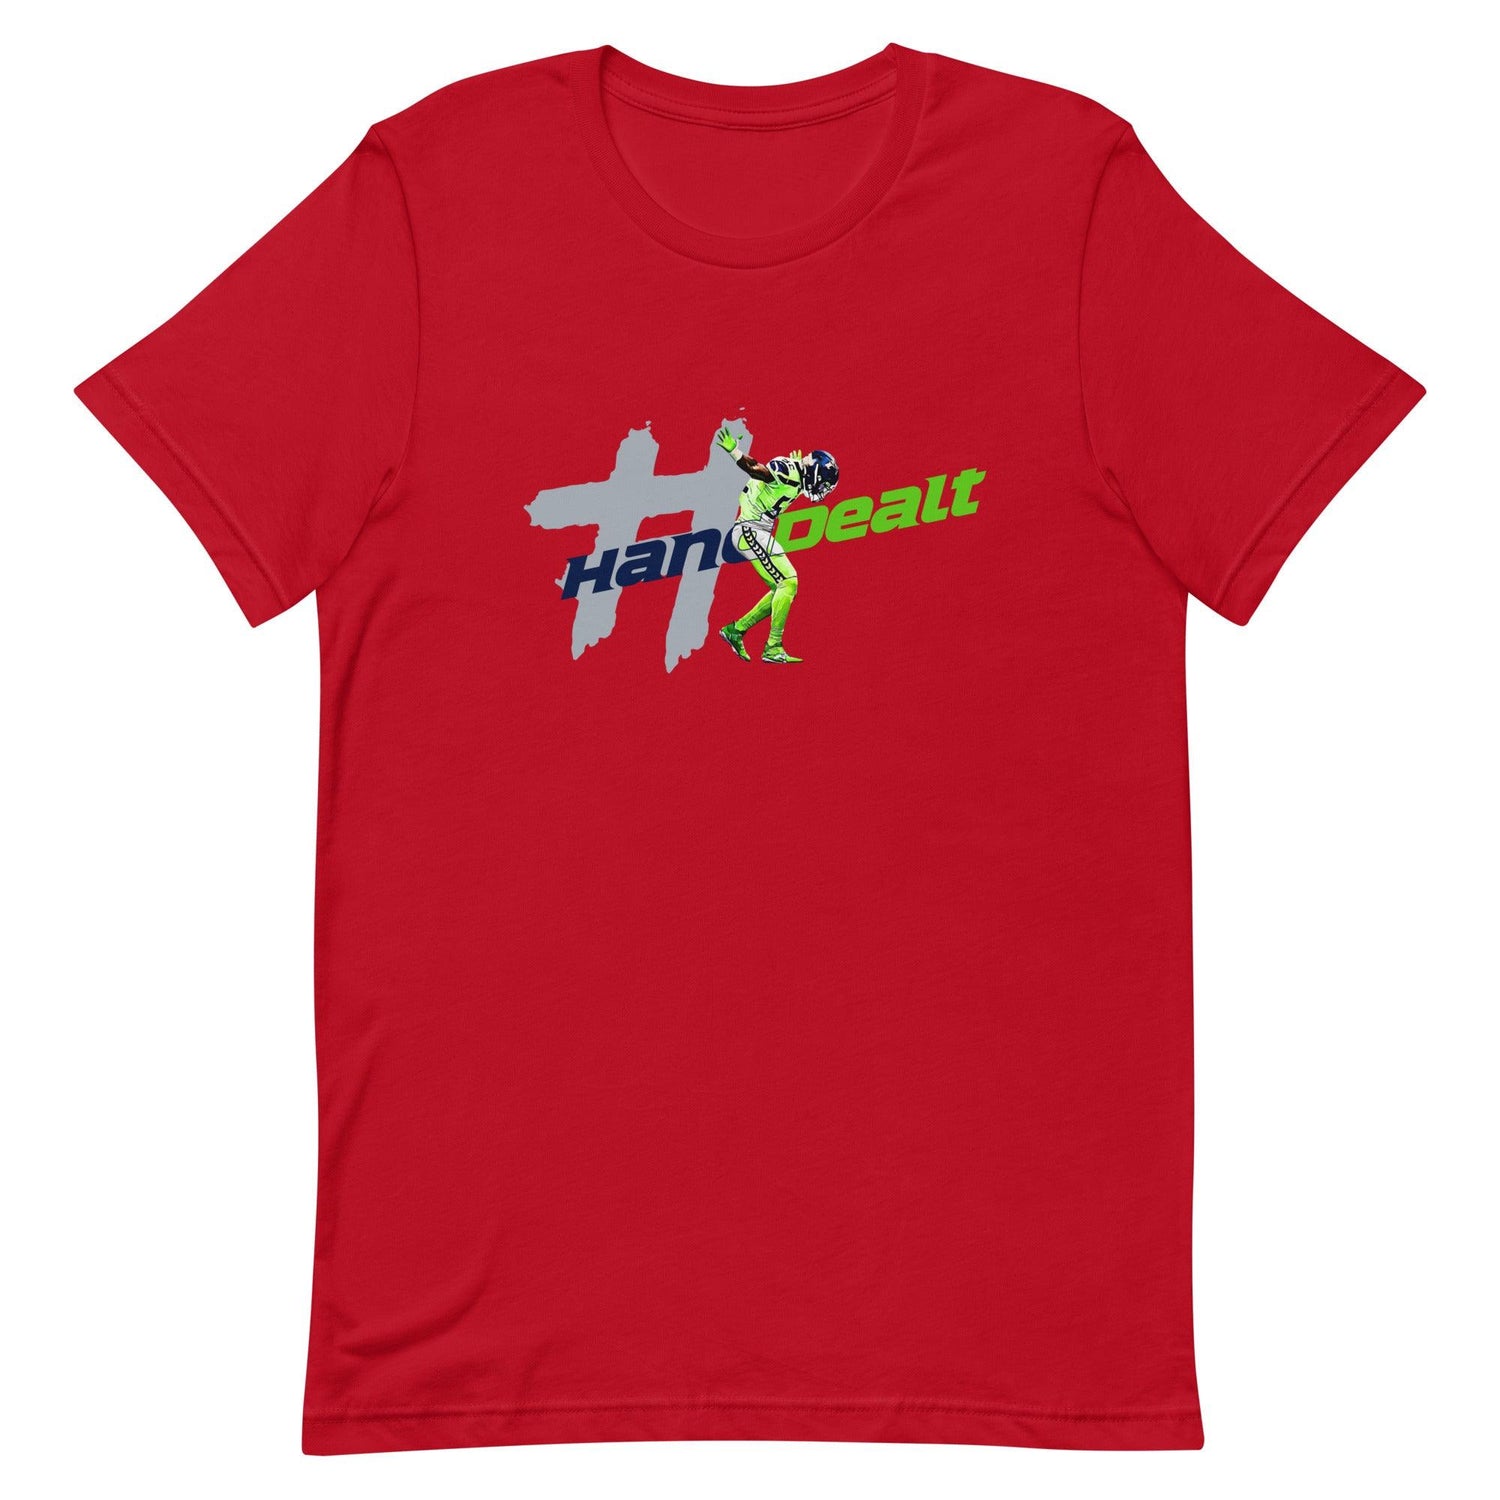 Darrell Taylor Jr. "#HandDealt" t-shirt - Fan Arch